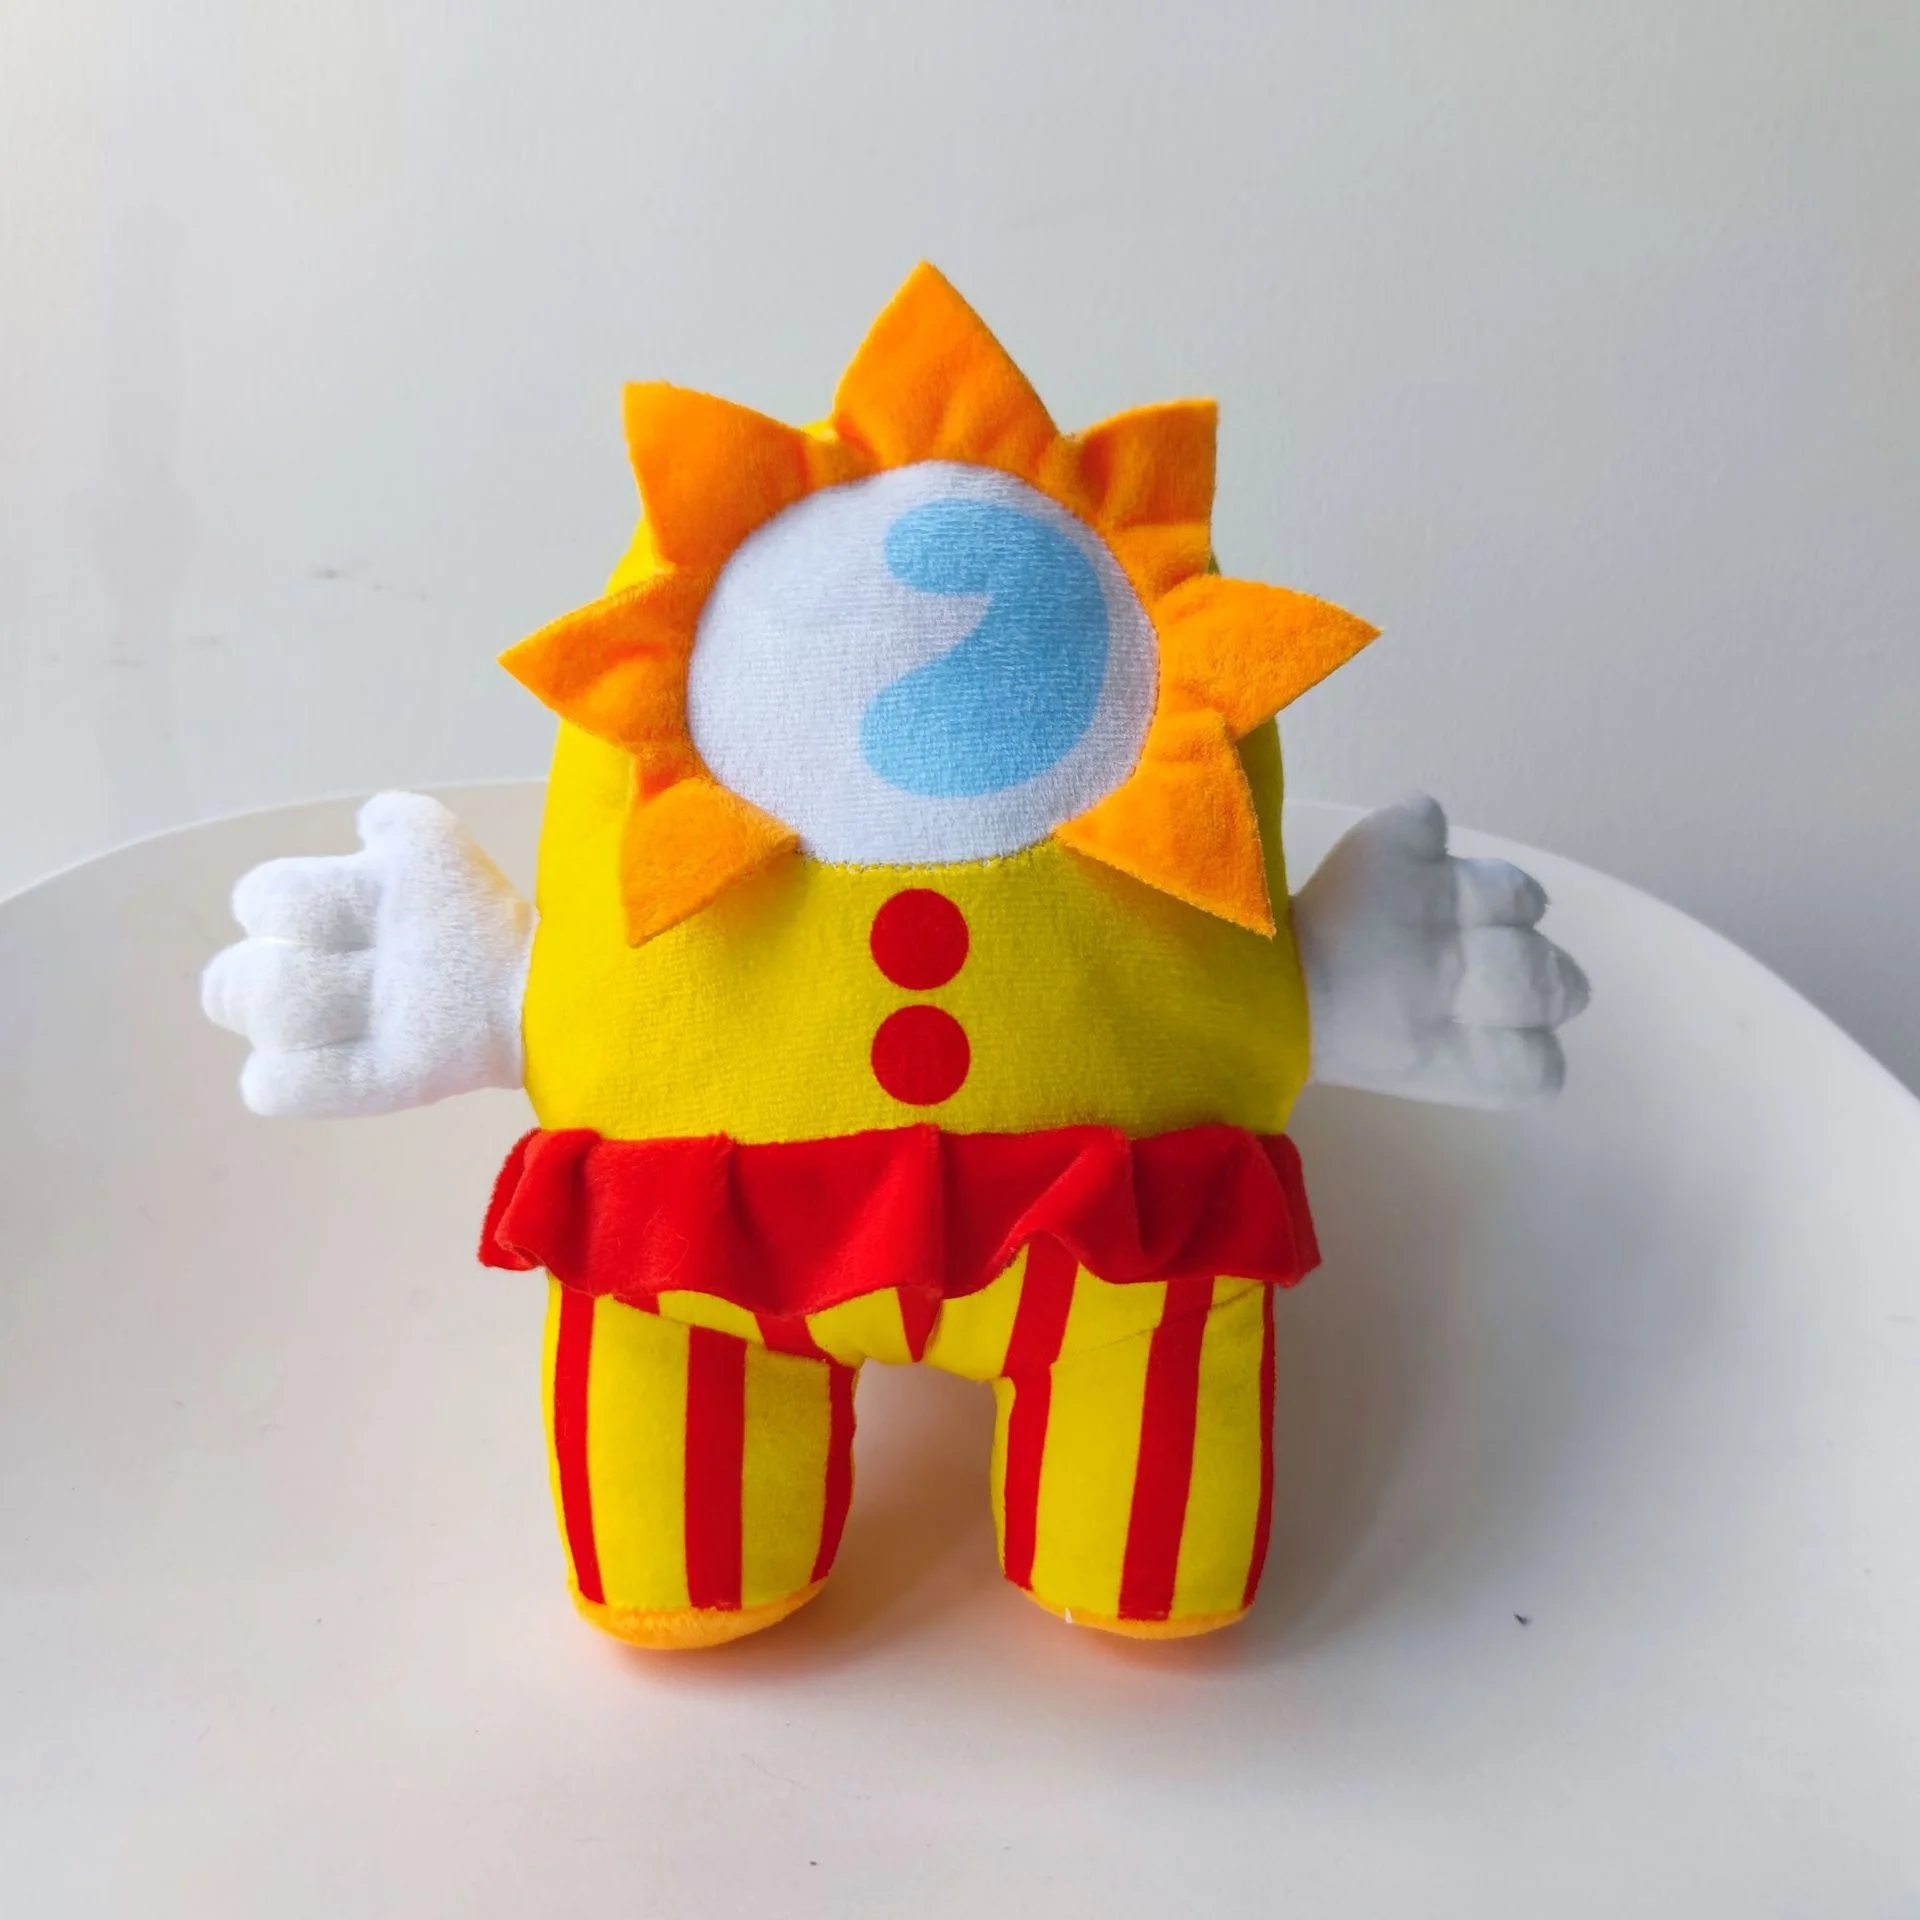 25 см Sundrop FNAF BOSS Moondrop плюшевая игрушка клоуна милые мягкие плюшевые плюши